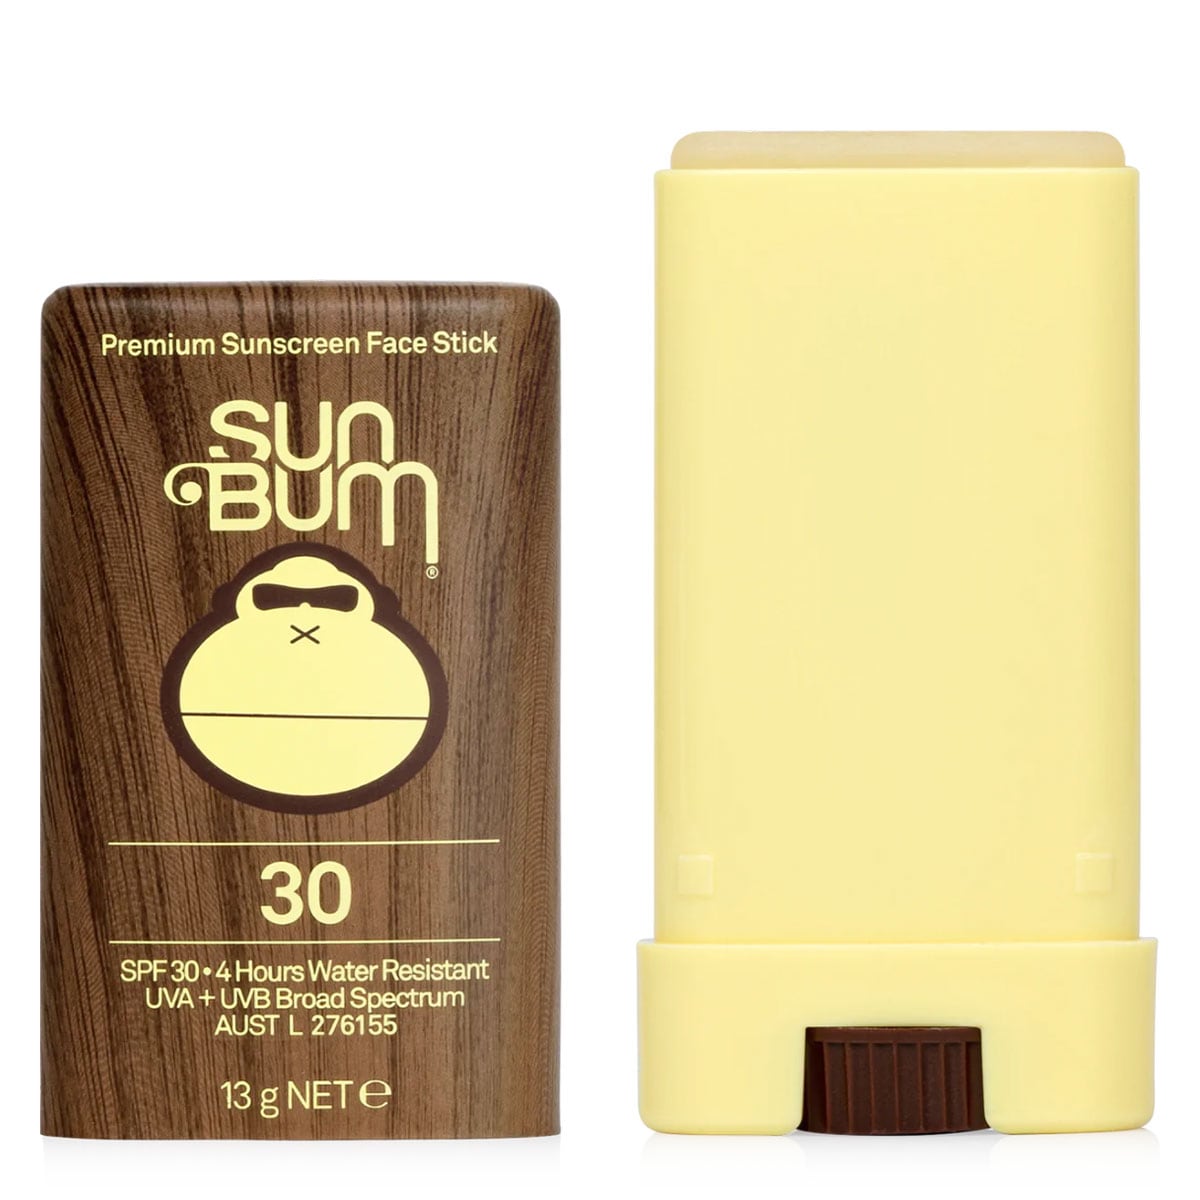 Sun Bum Original Sunscreen Face Stick SPF30 13g